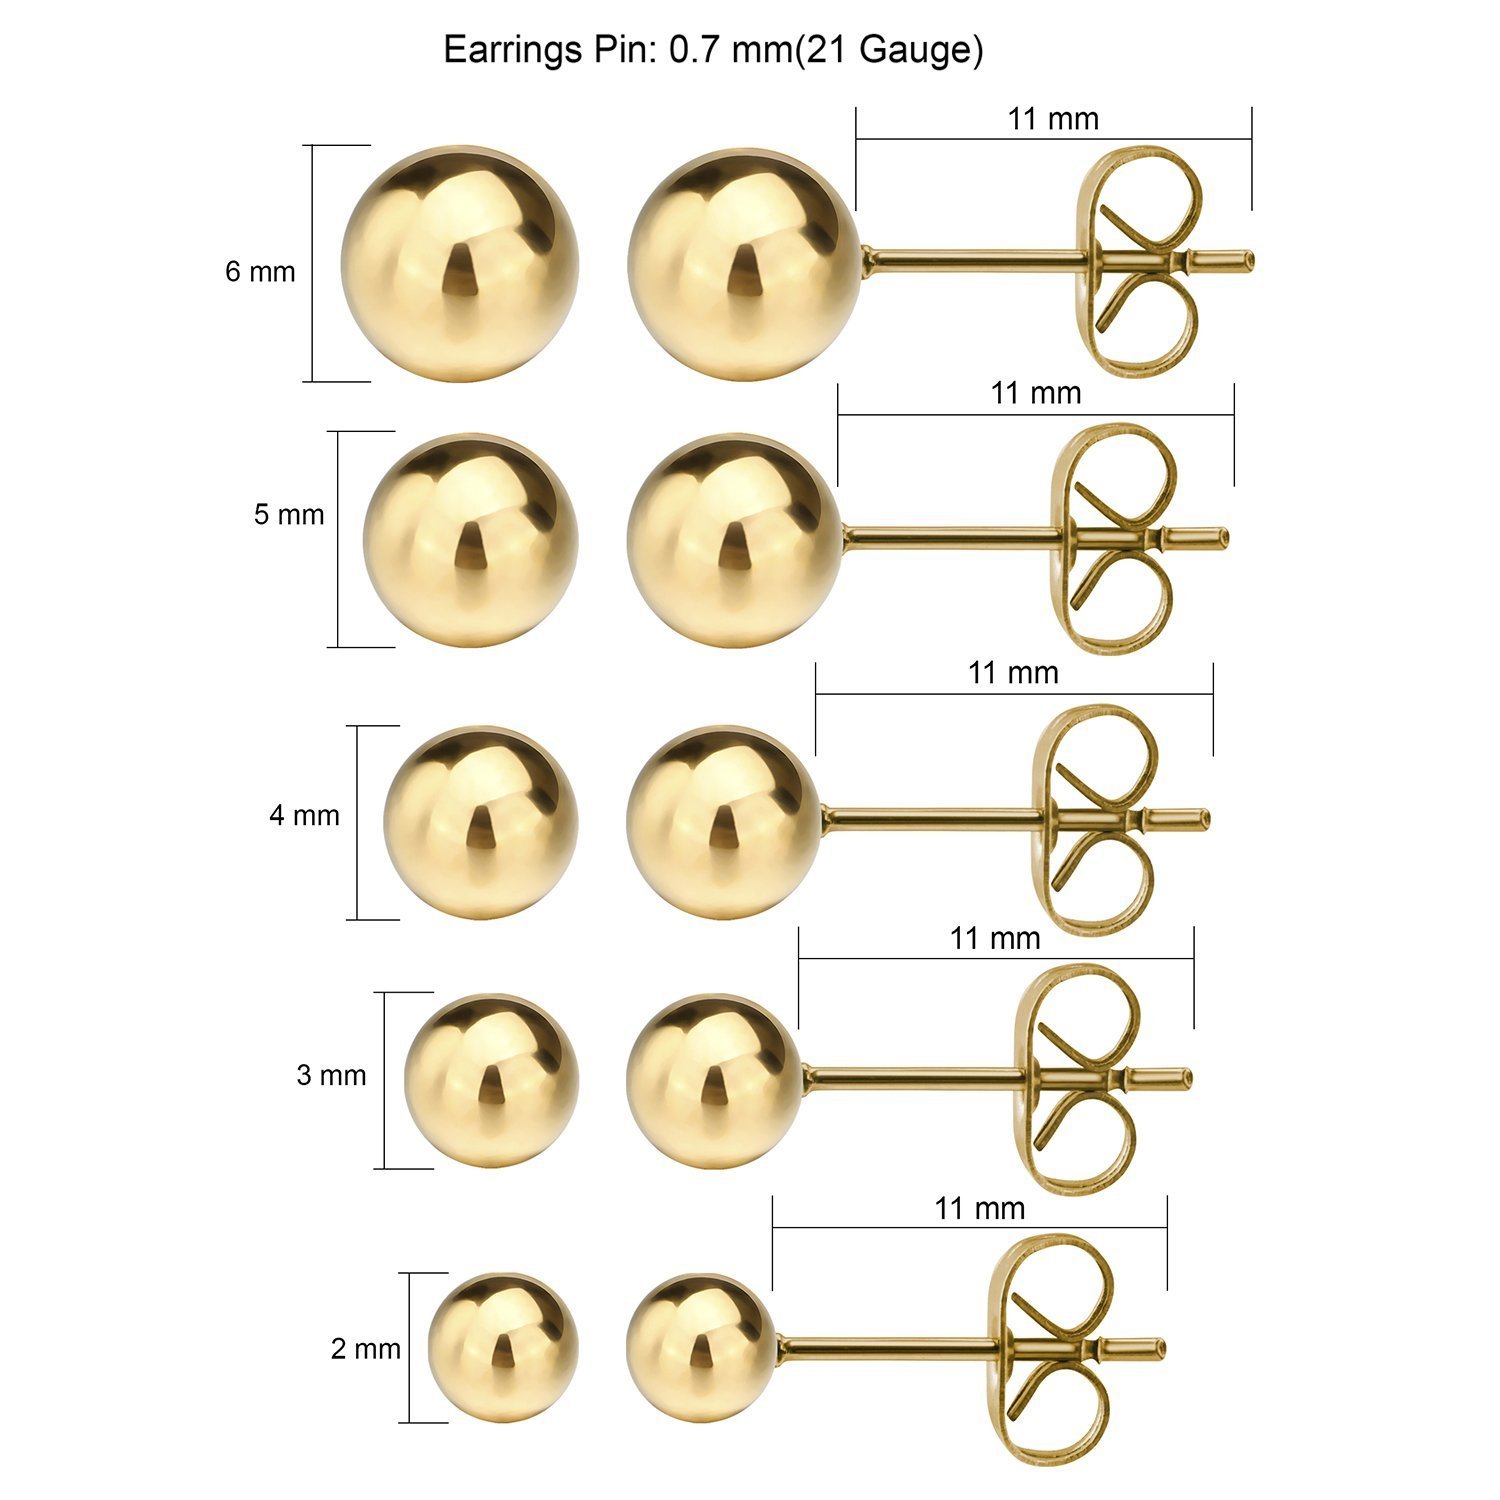 JEWELRIESHOP Ball Earrings 316L Surgical Steel Earrings Round Ball Stud Earrings Set for Women Girls